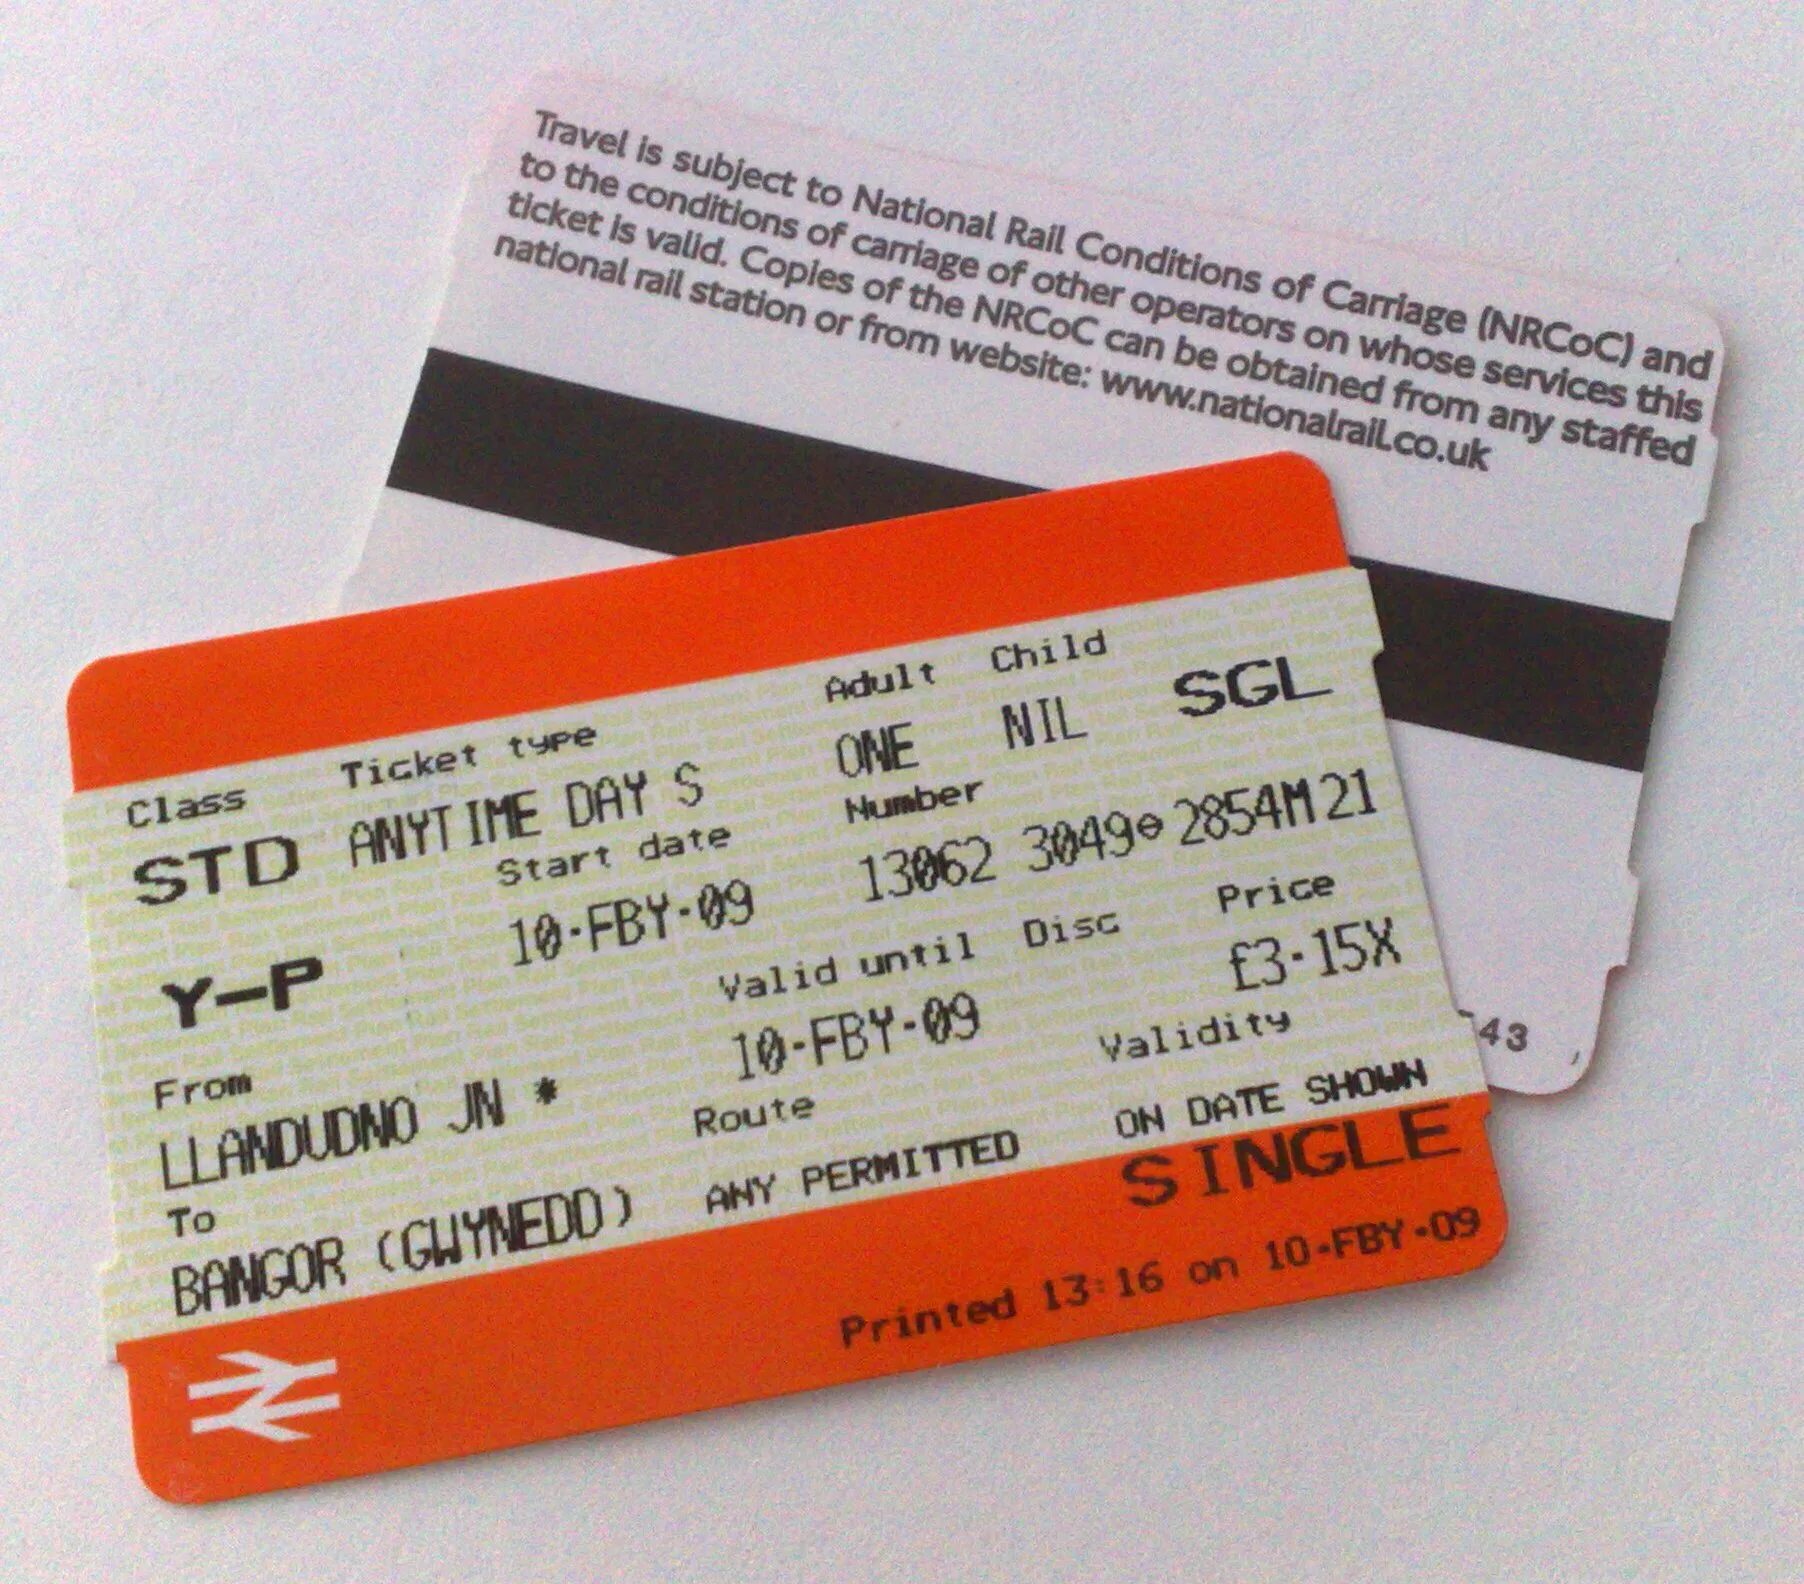 Rail ticket. Билет ticket. Train tickets uk. Single ticket. Valid start